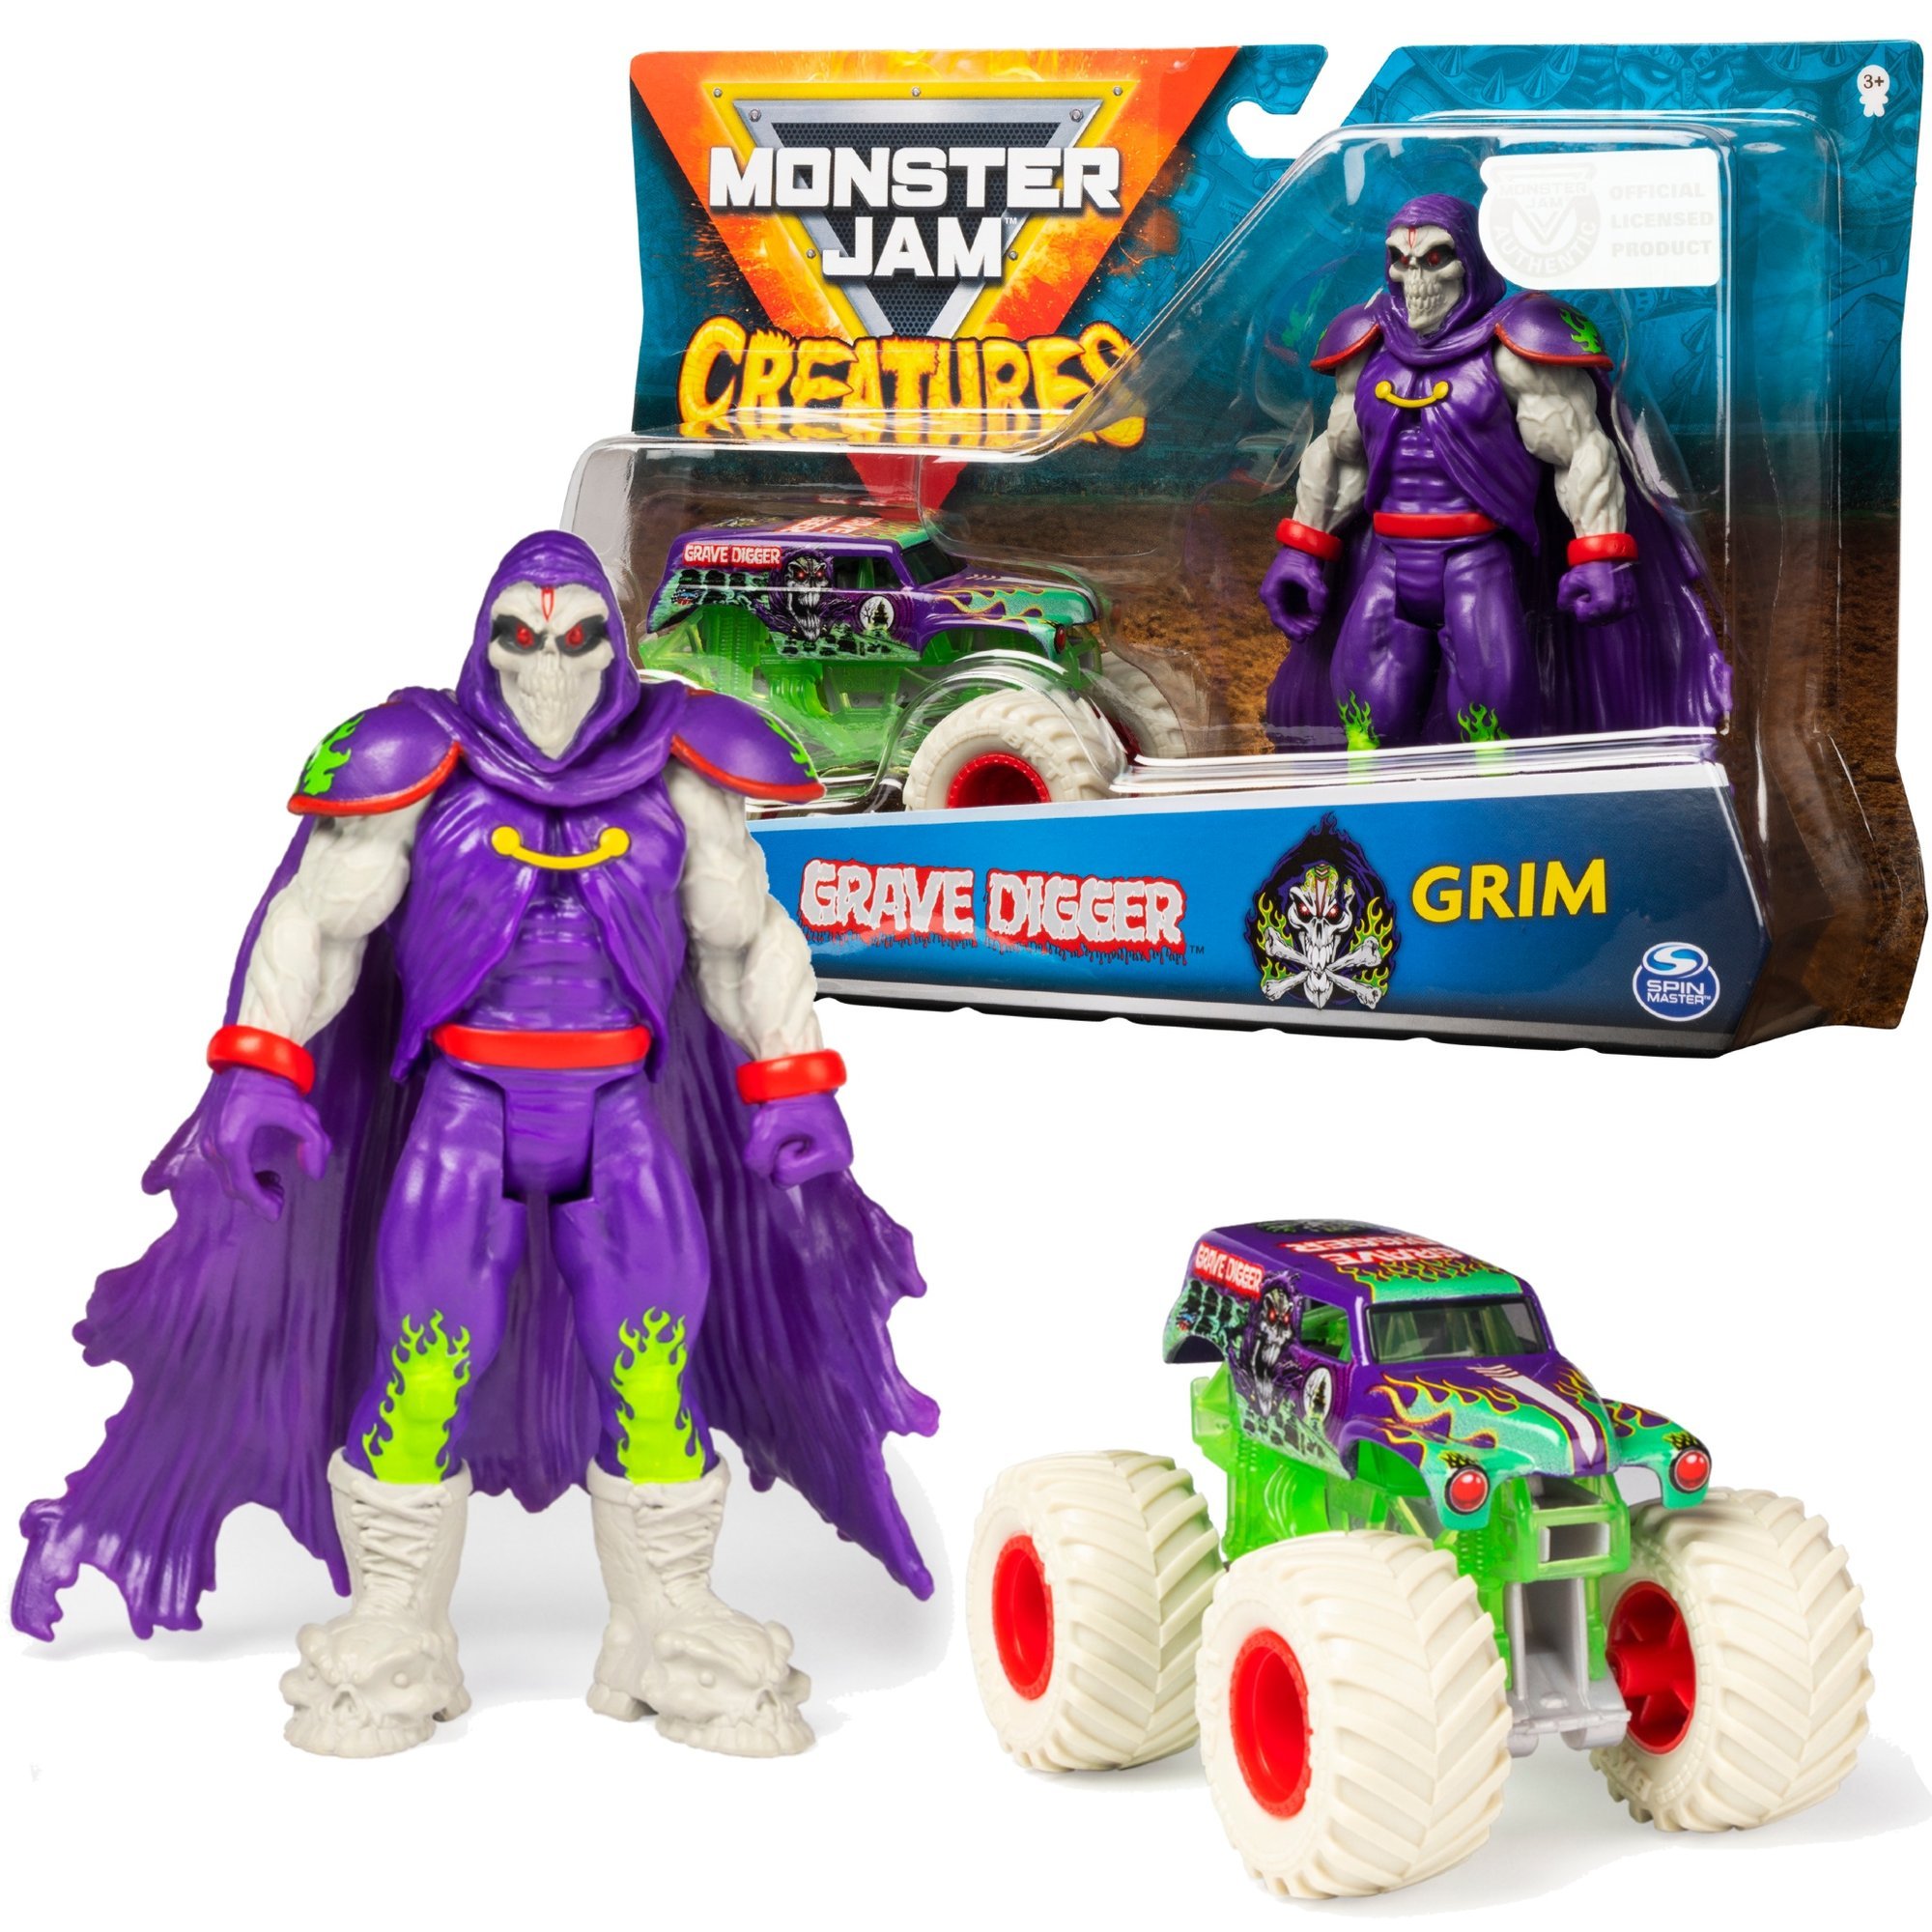 Monster Jam Creatures Grave Digger Grim pojazd + figurka